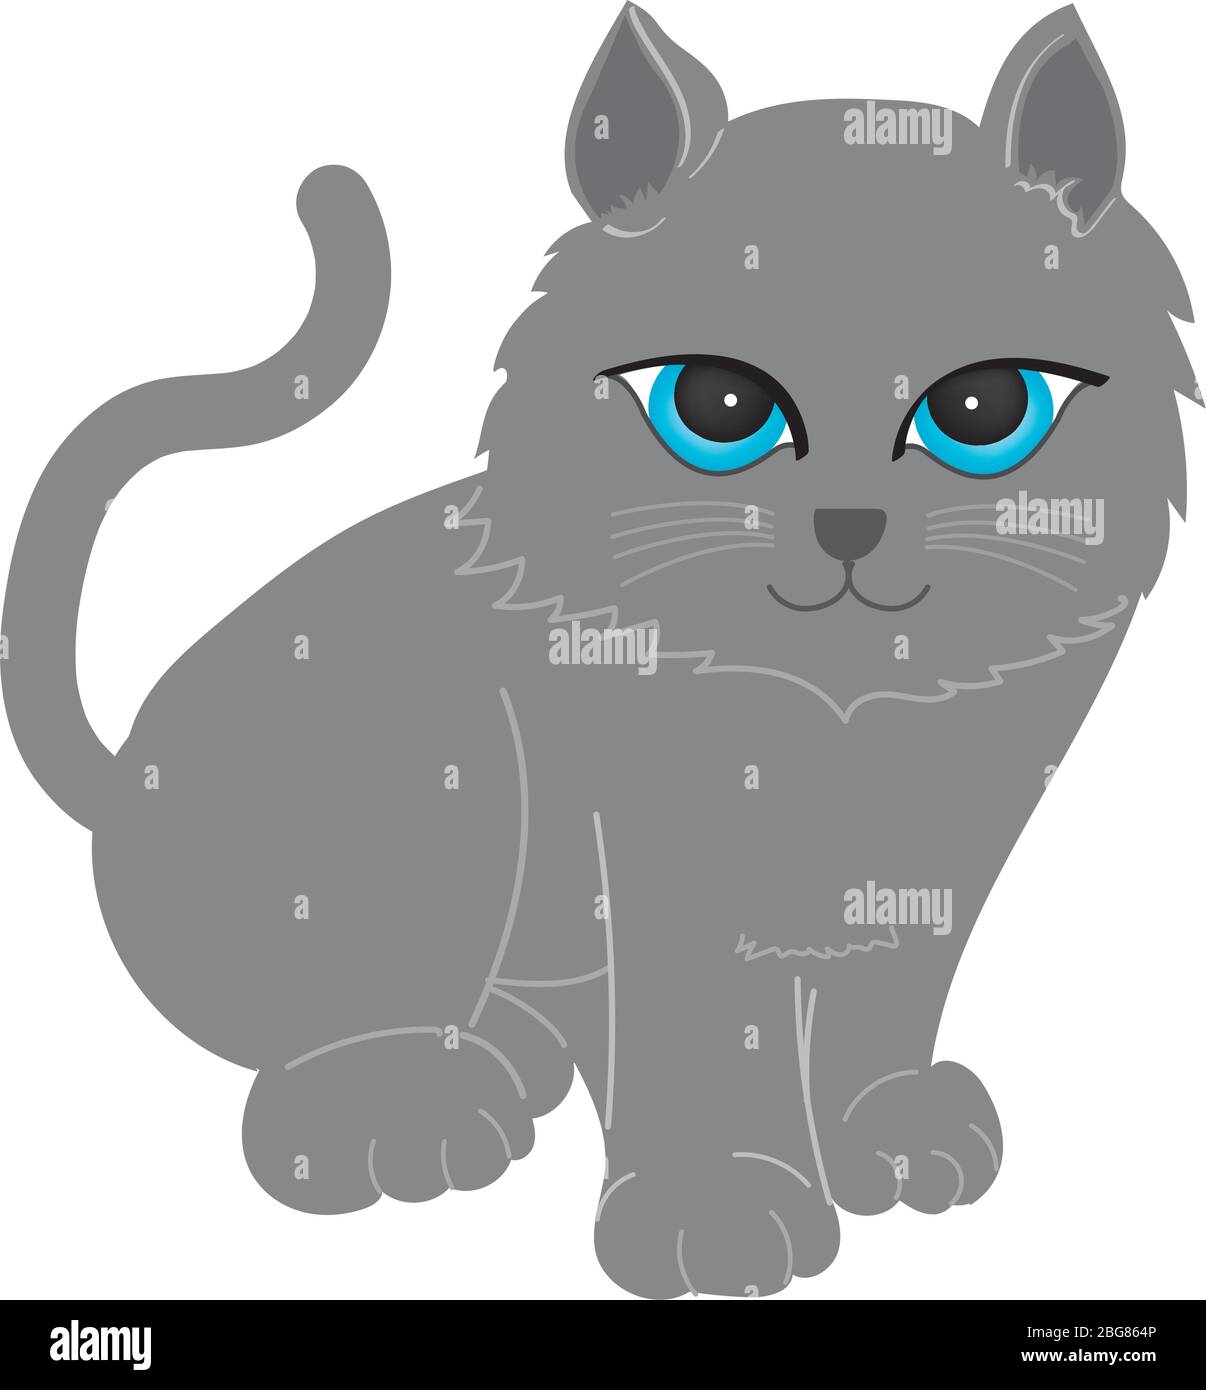 Clipart d'illustration Cat. Un chat gris à queue longue assis. Face droite et il a de grands yeux bleus. Il est sur un sol blanc. Dessin à la main art. Illustration de Vecteur